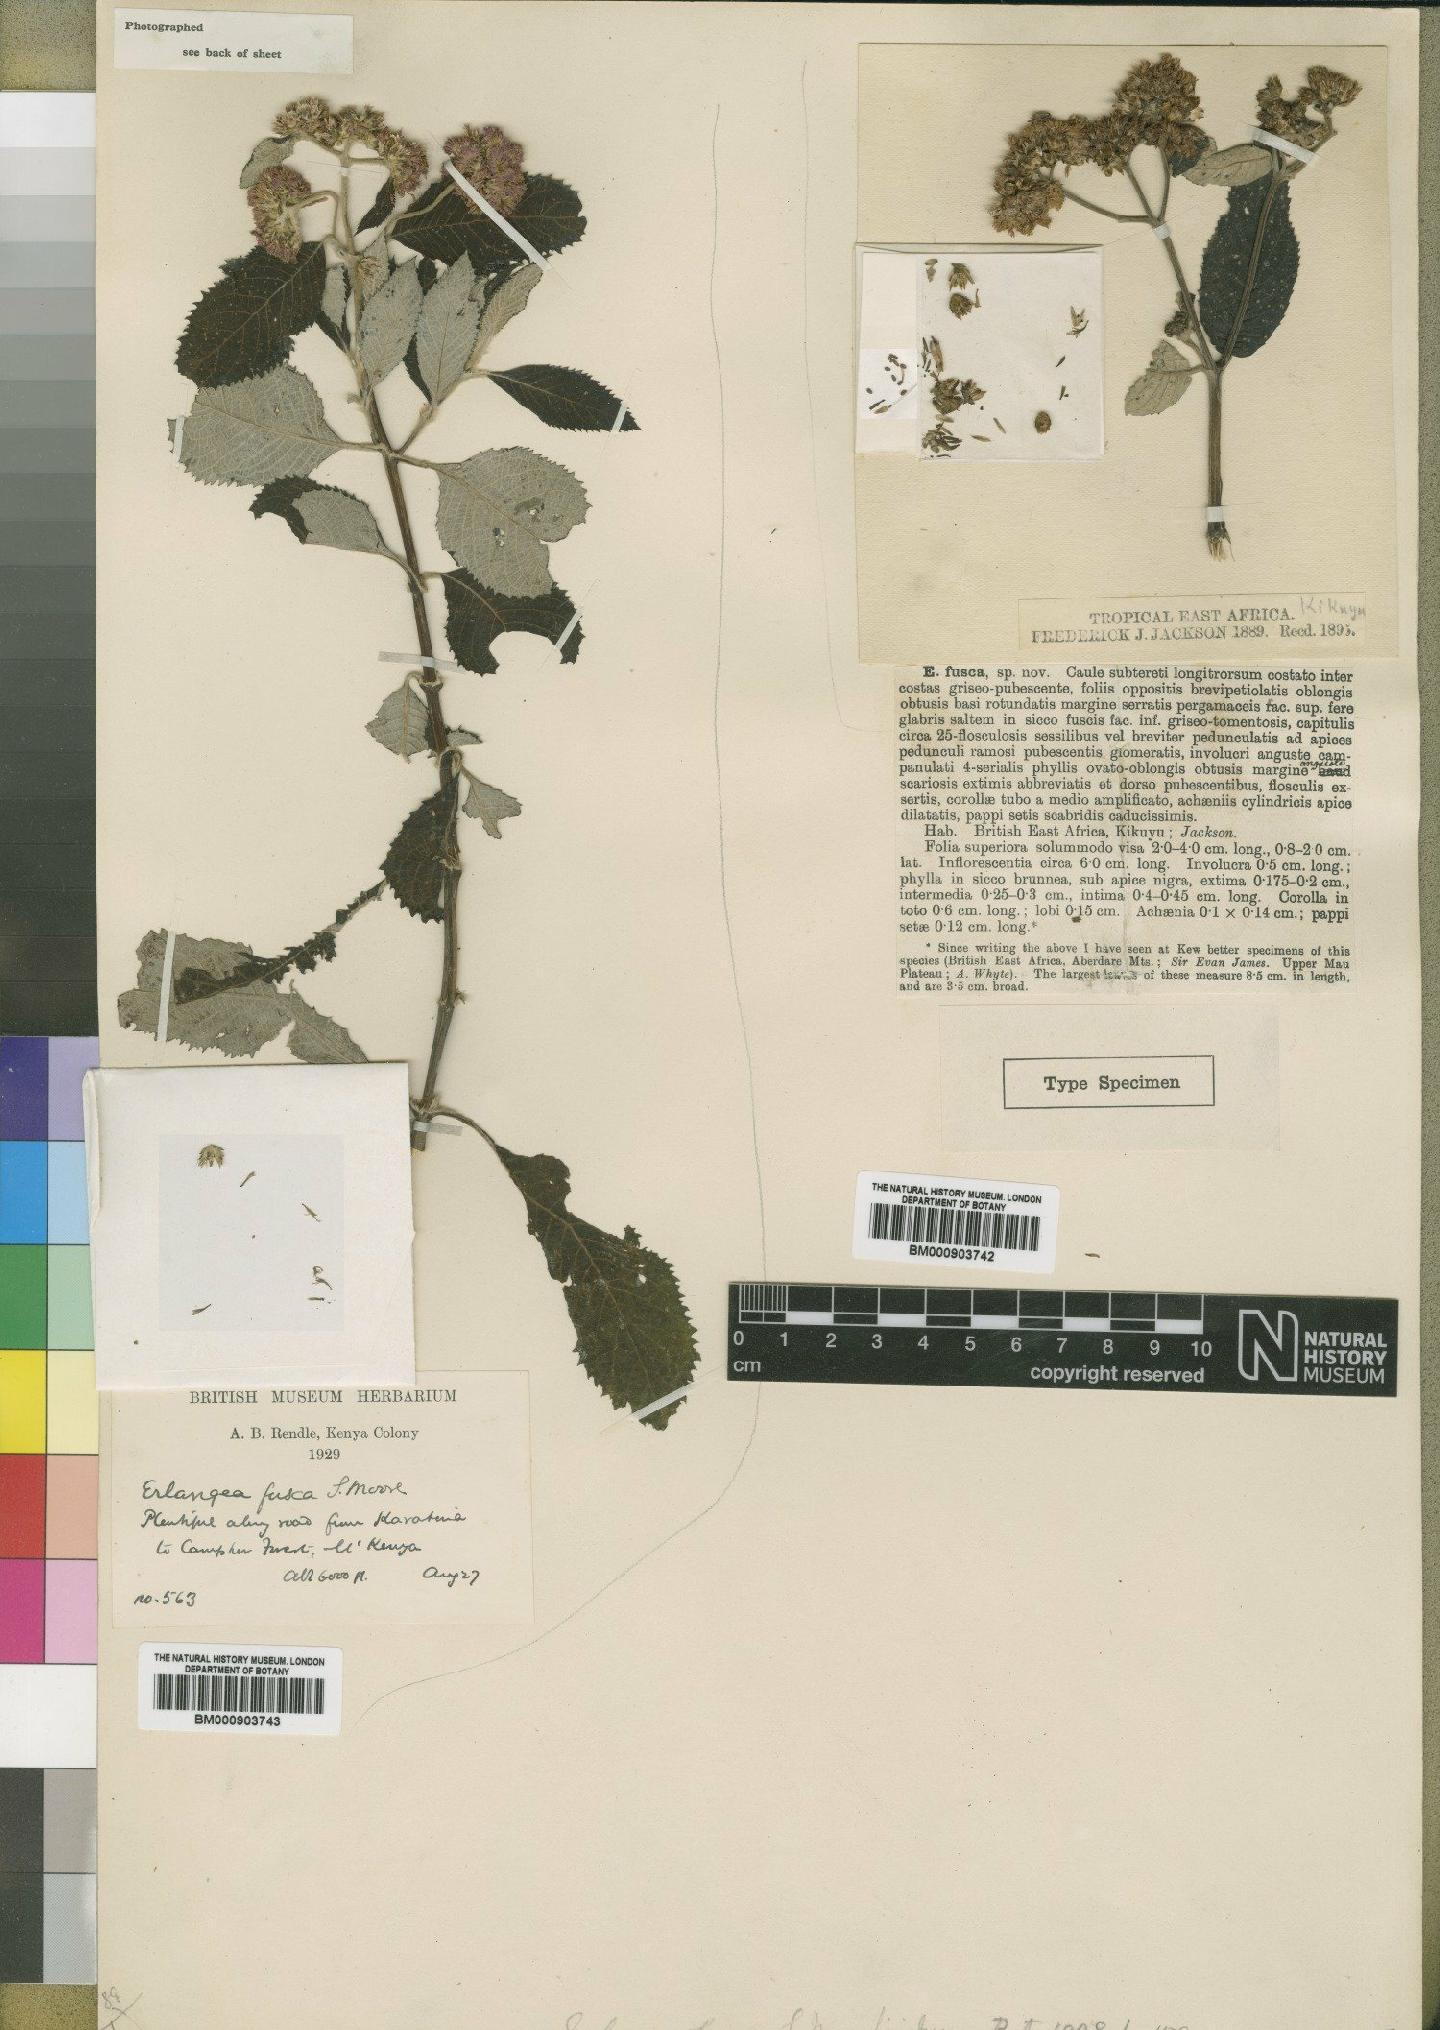 To NHMUK collection (Erlangea fusca Moore; NHMUK:ecatalogue:4528749)